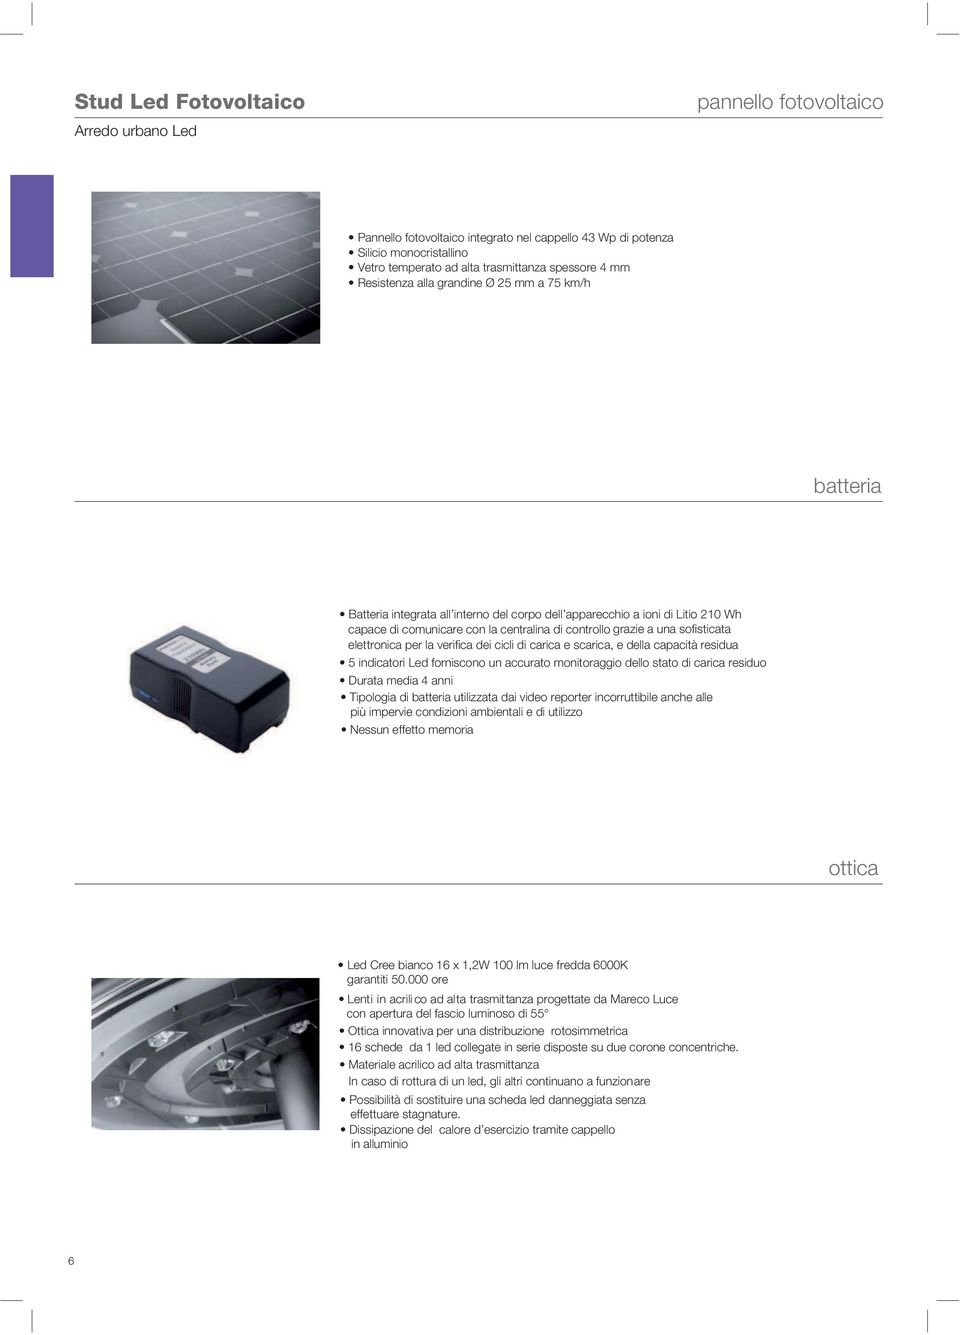 fotovoltaico batteria ottica